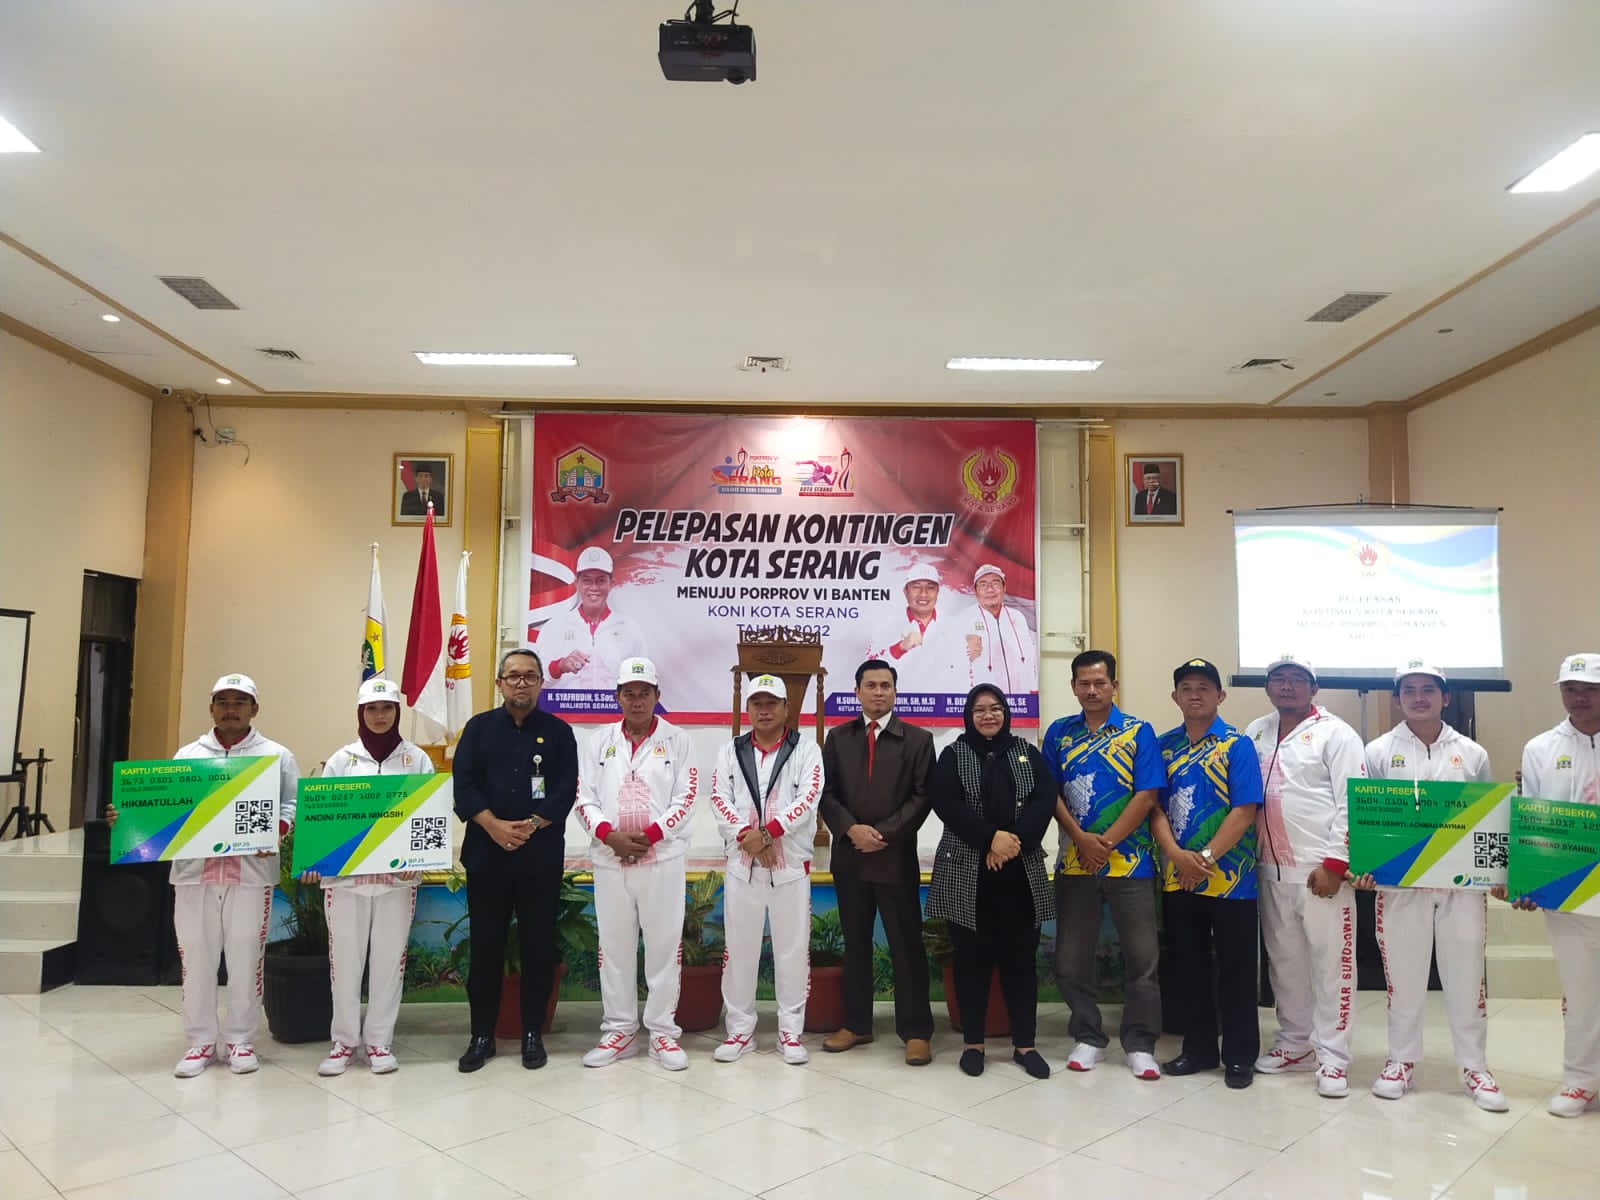 Sebanyak 548 atlet Kontingen Kota Serang akan berlaga di Kota Tangerang dalam pekan olahraga provinsi PORPOV VI Banten tahun 2022 di Kota Tangerang.